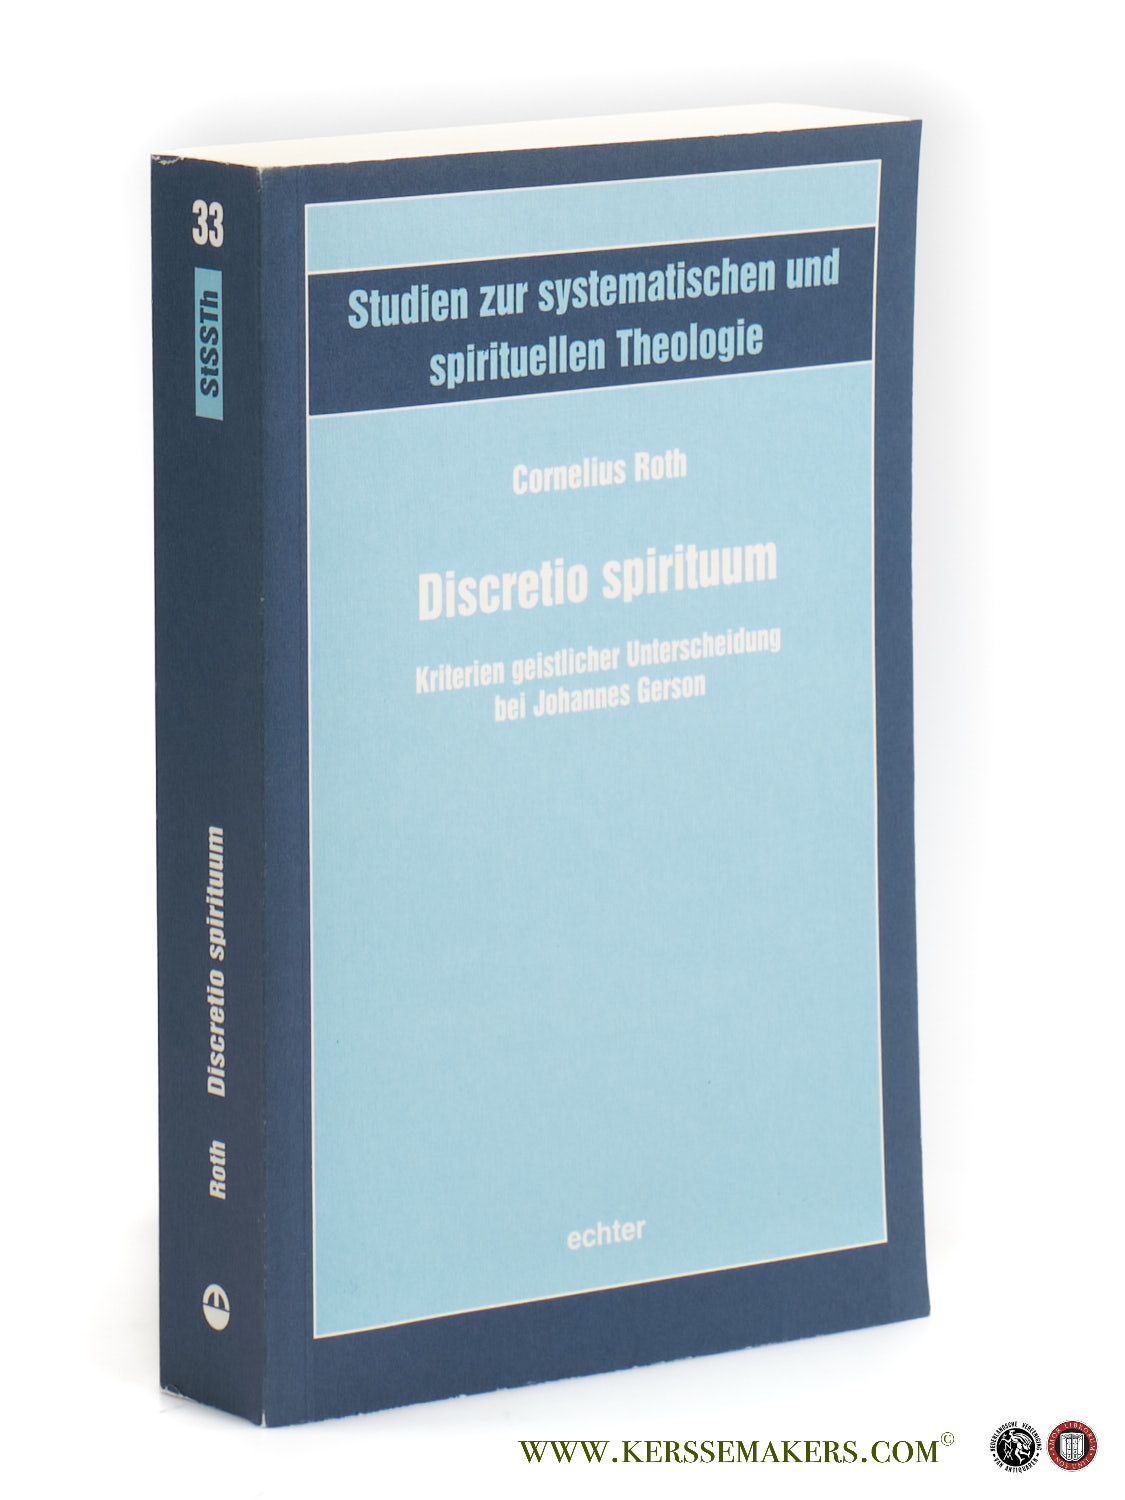 Discretio spirituum : Kriterien geistlicher Unterscheidung bei Johannes Gerson. - Roth, Cornelius.